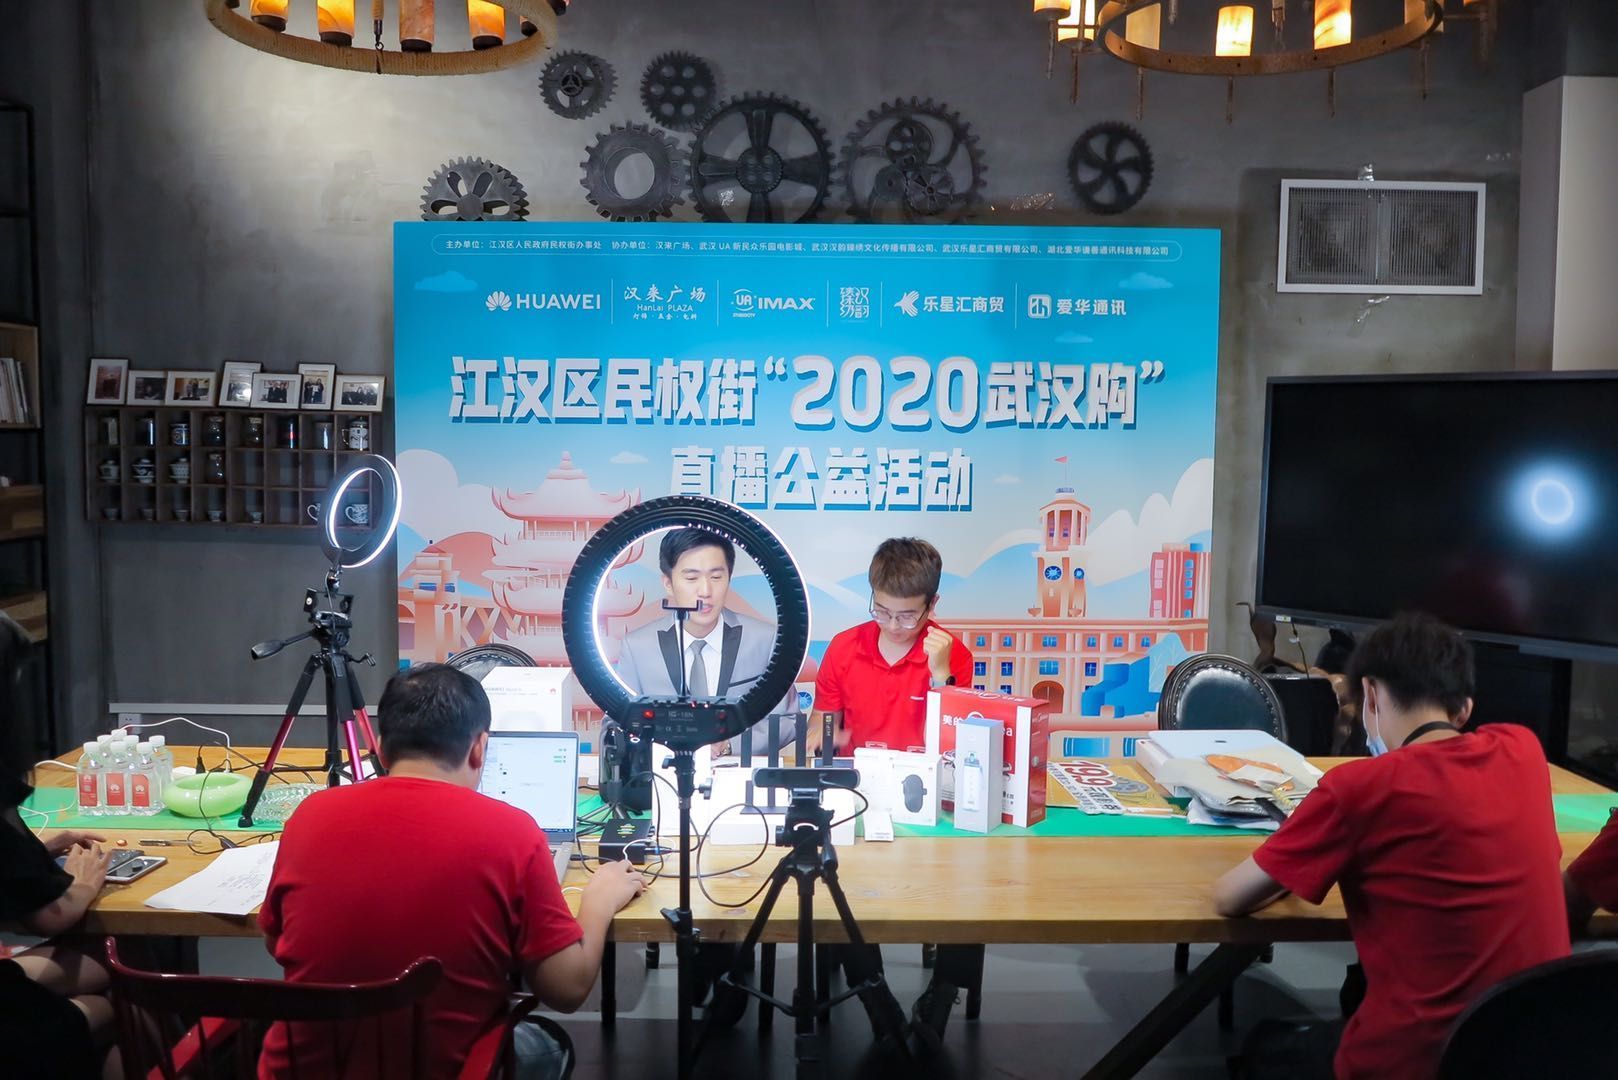 江汉区民权街“2020武汉购”直播首秀获赞超20万